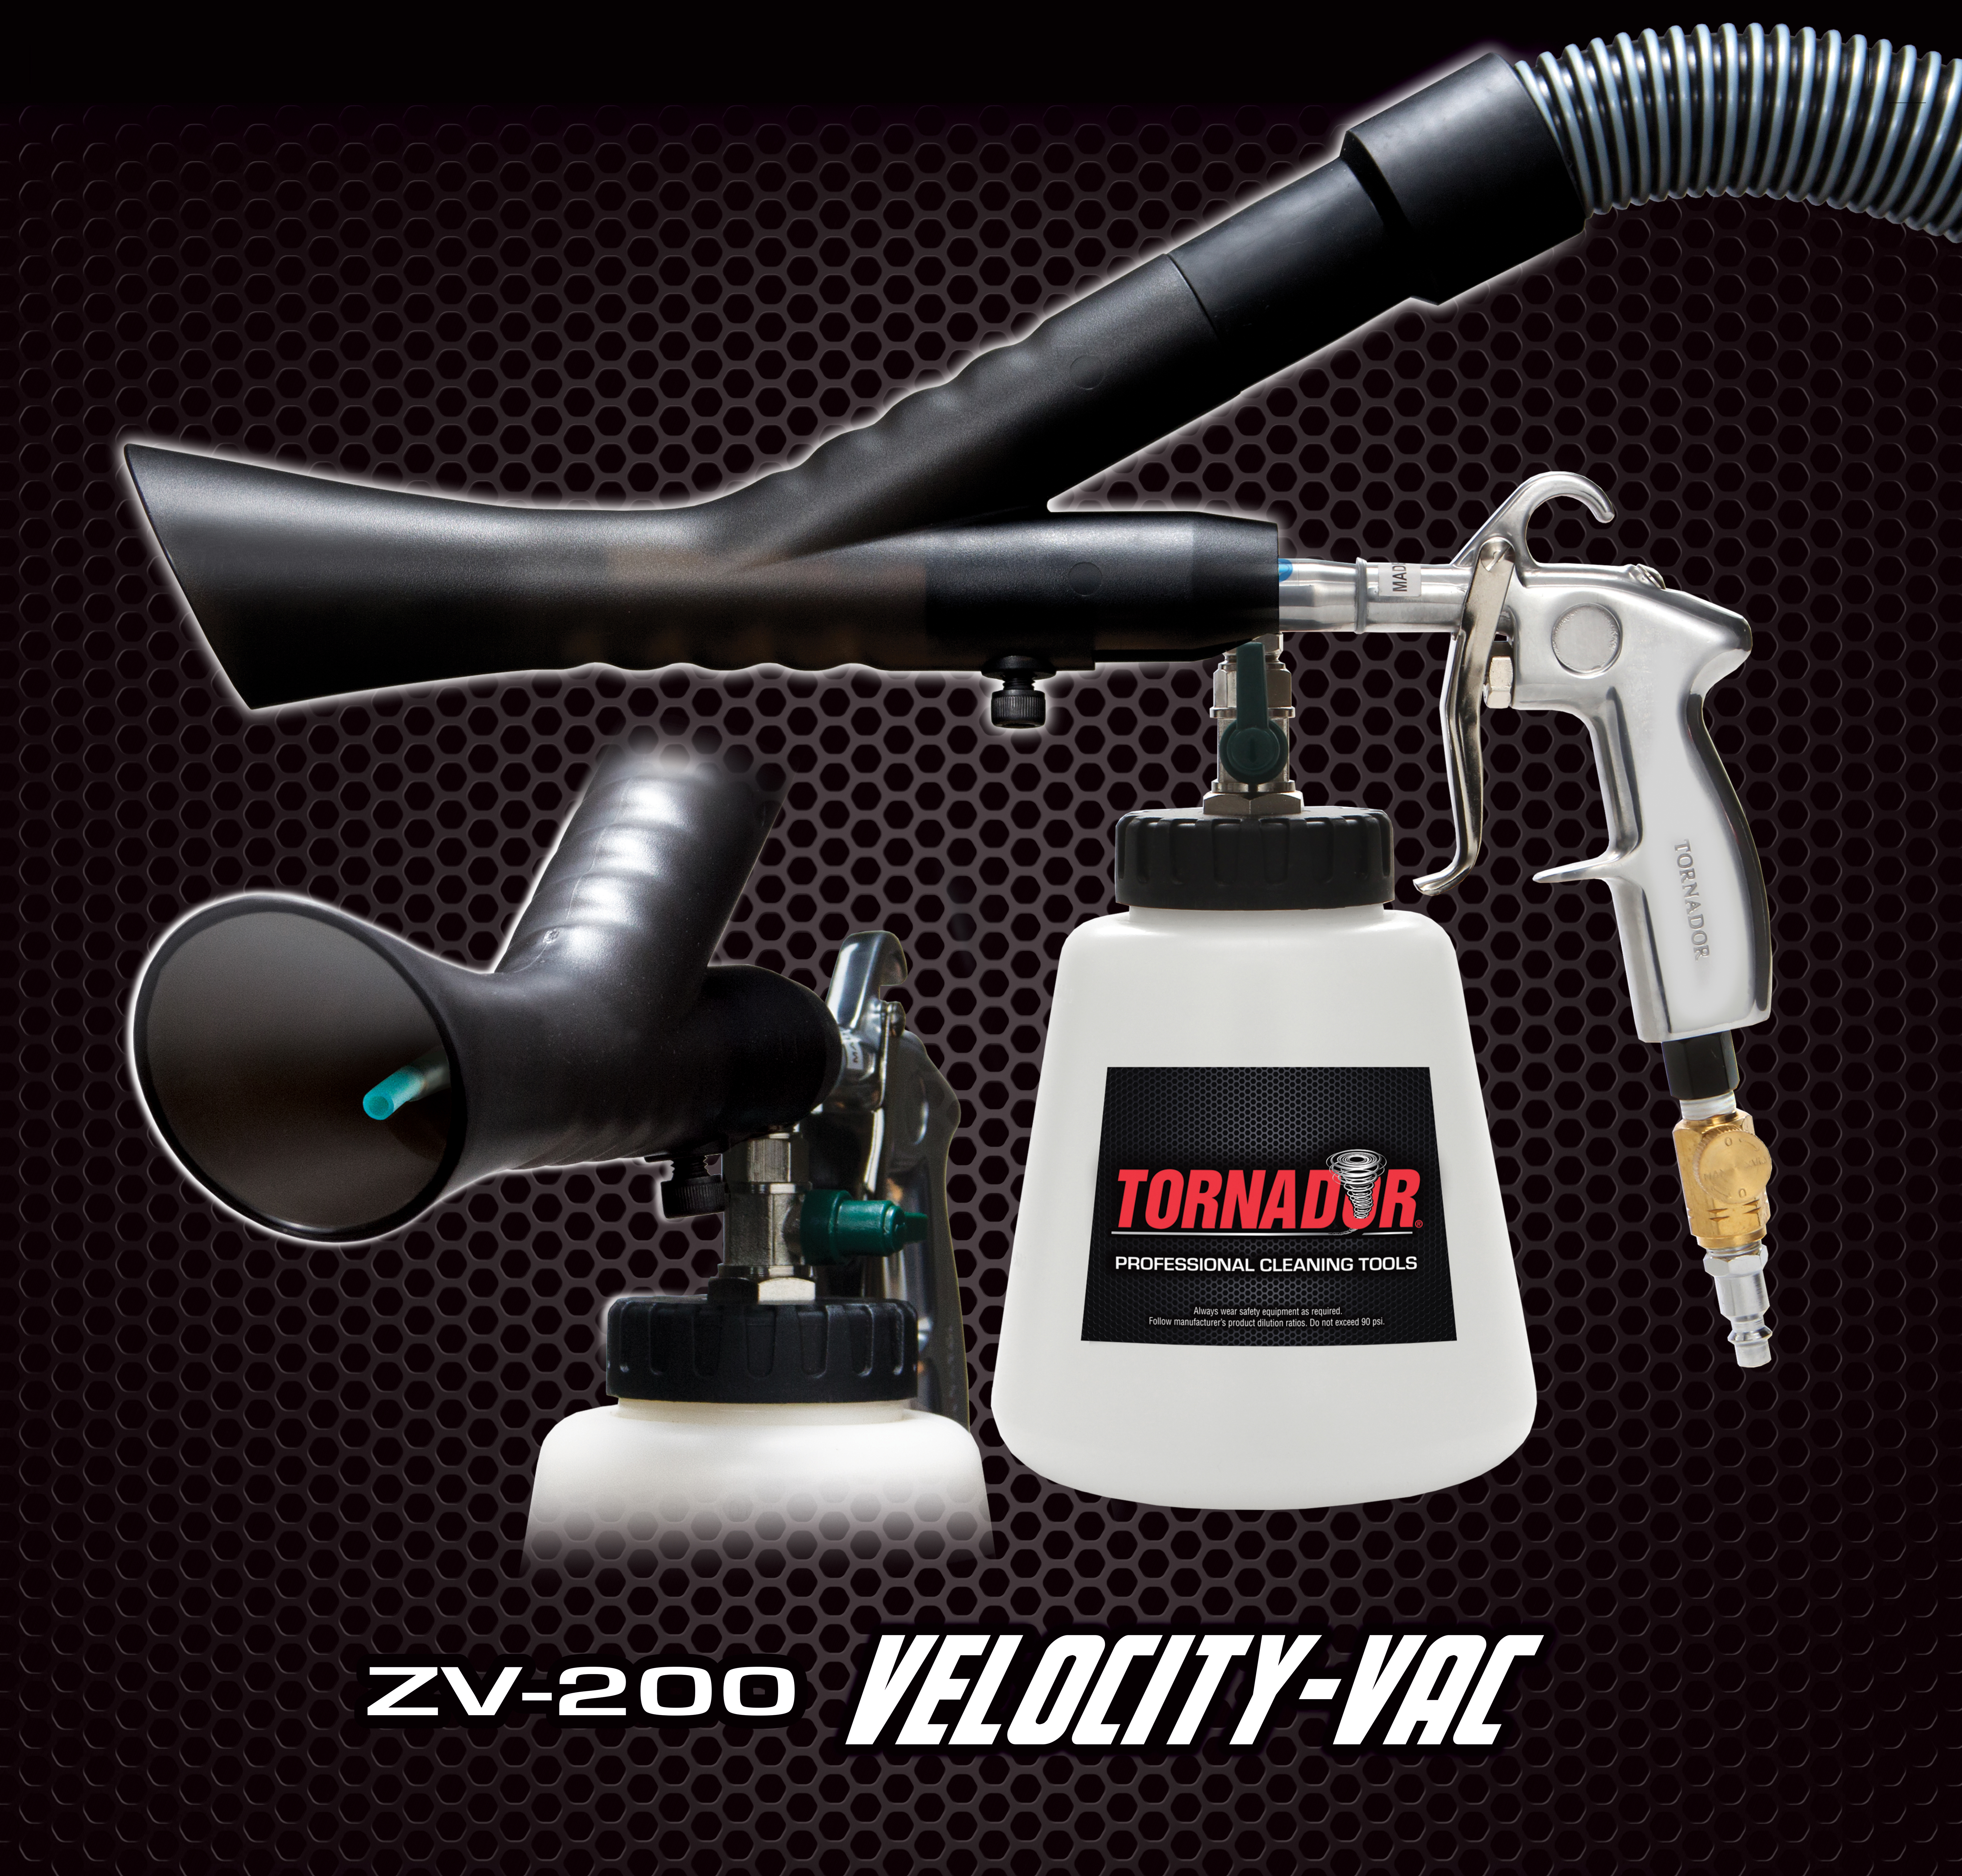 Tornador ZV-240 Velocity Vac Dry